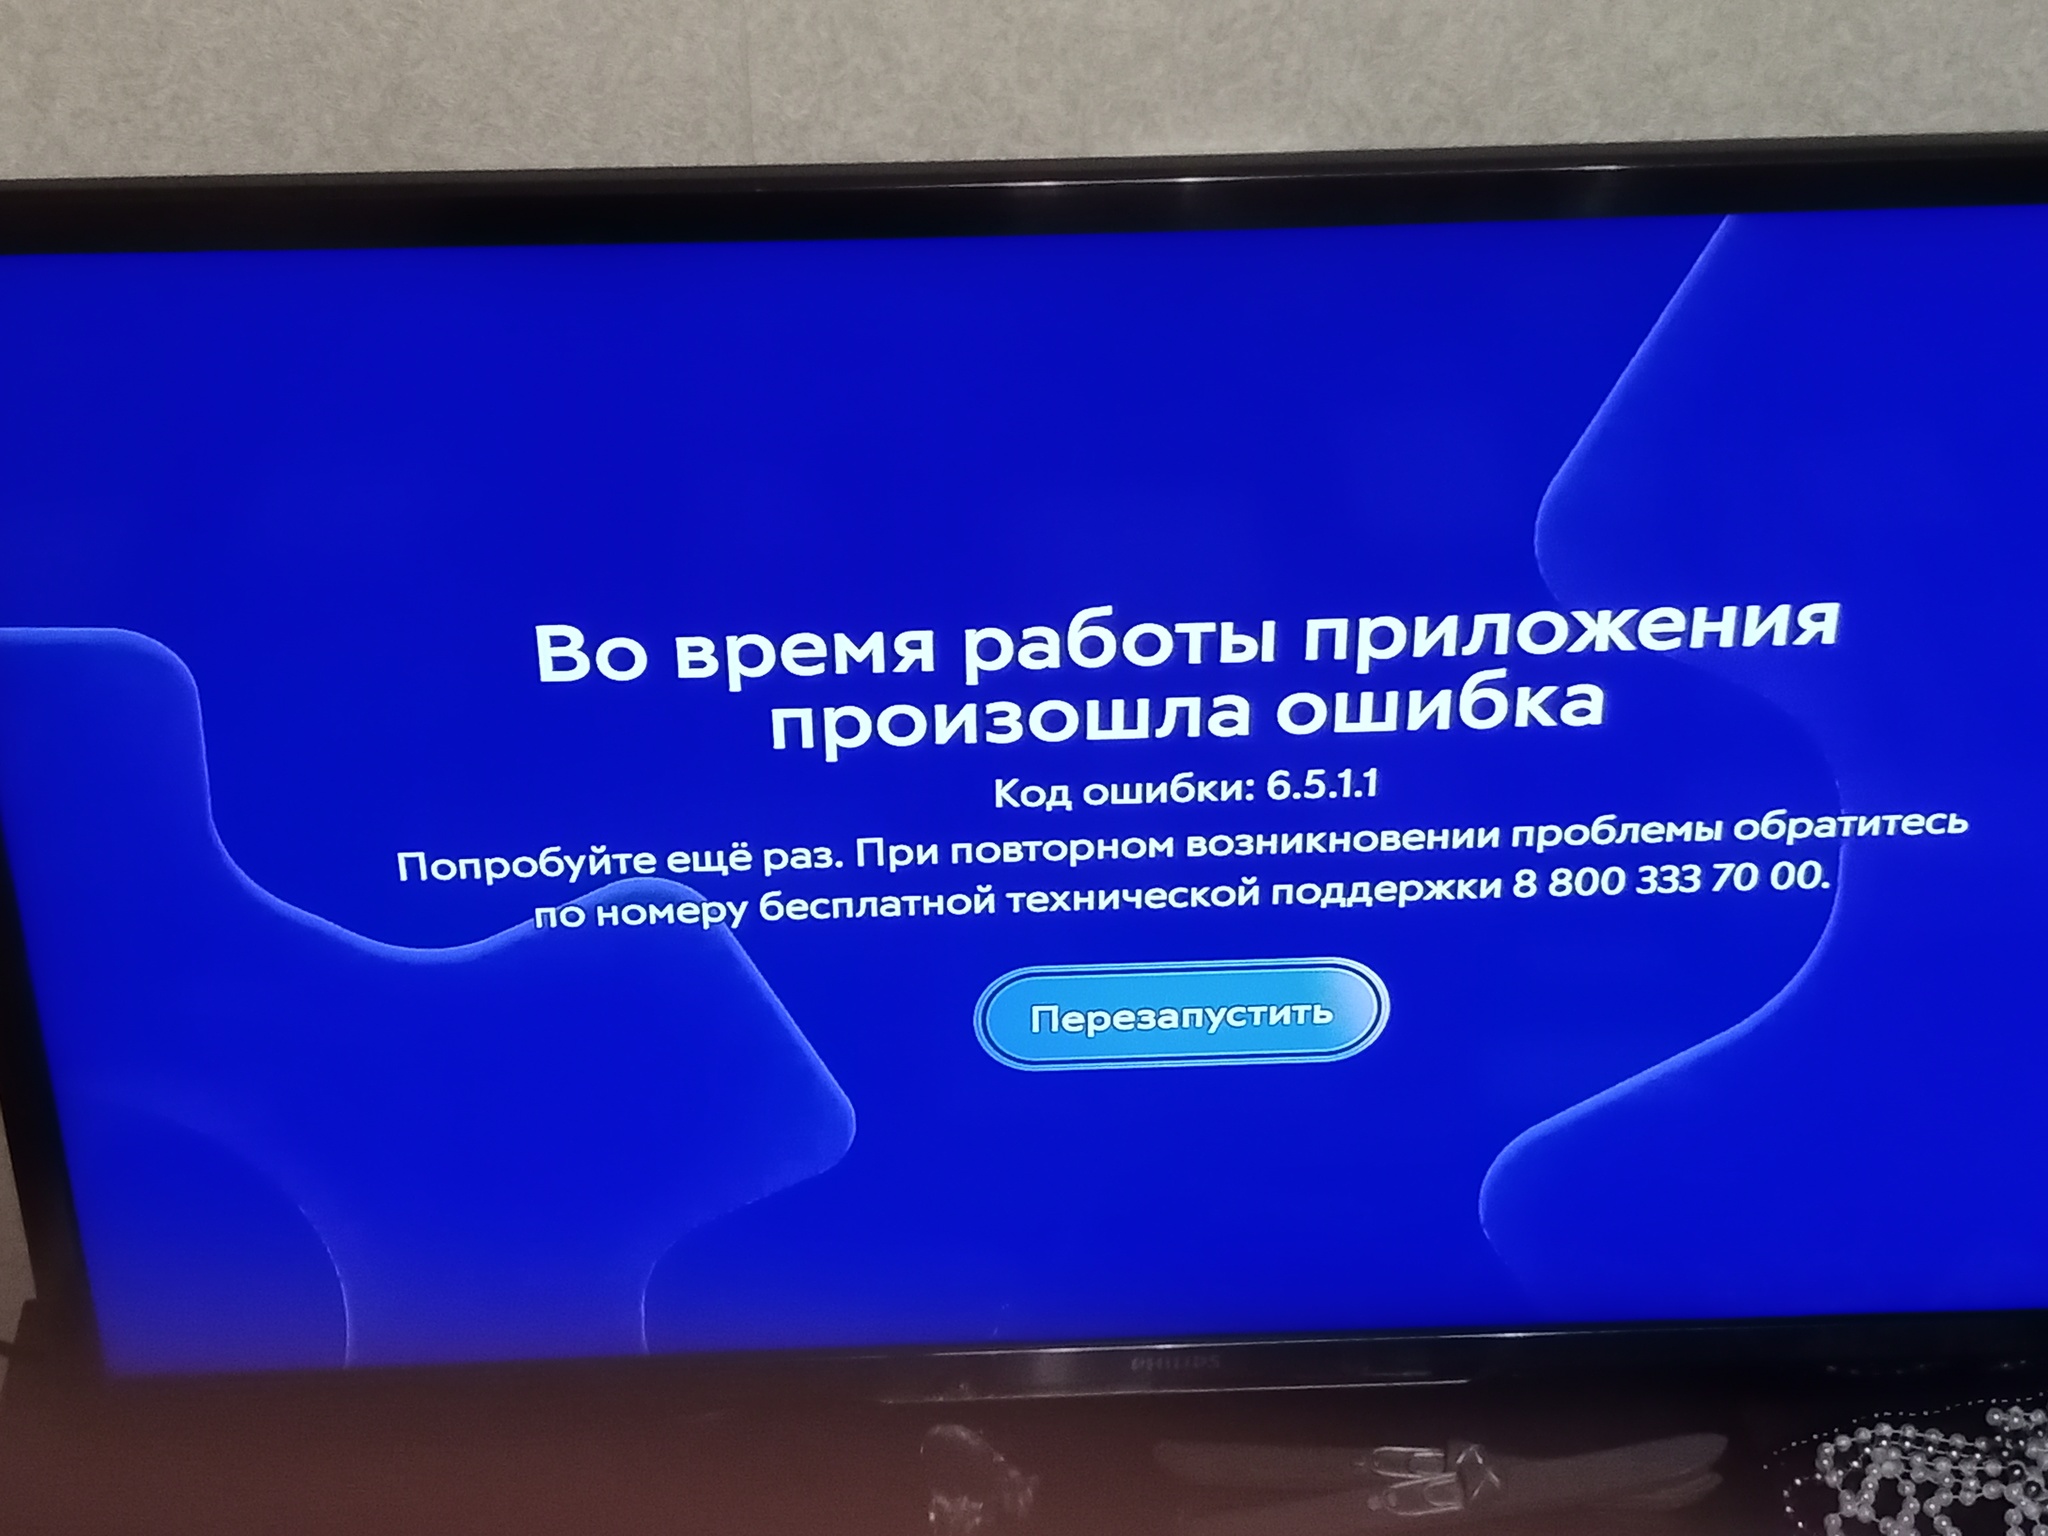 Приставка movix от Дом.ru или геморрой за 6000 рублей! | Пикабу